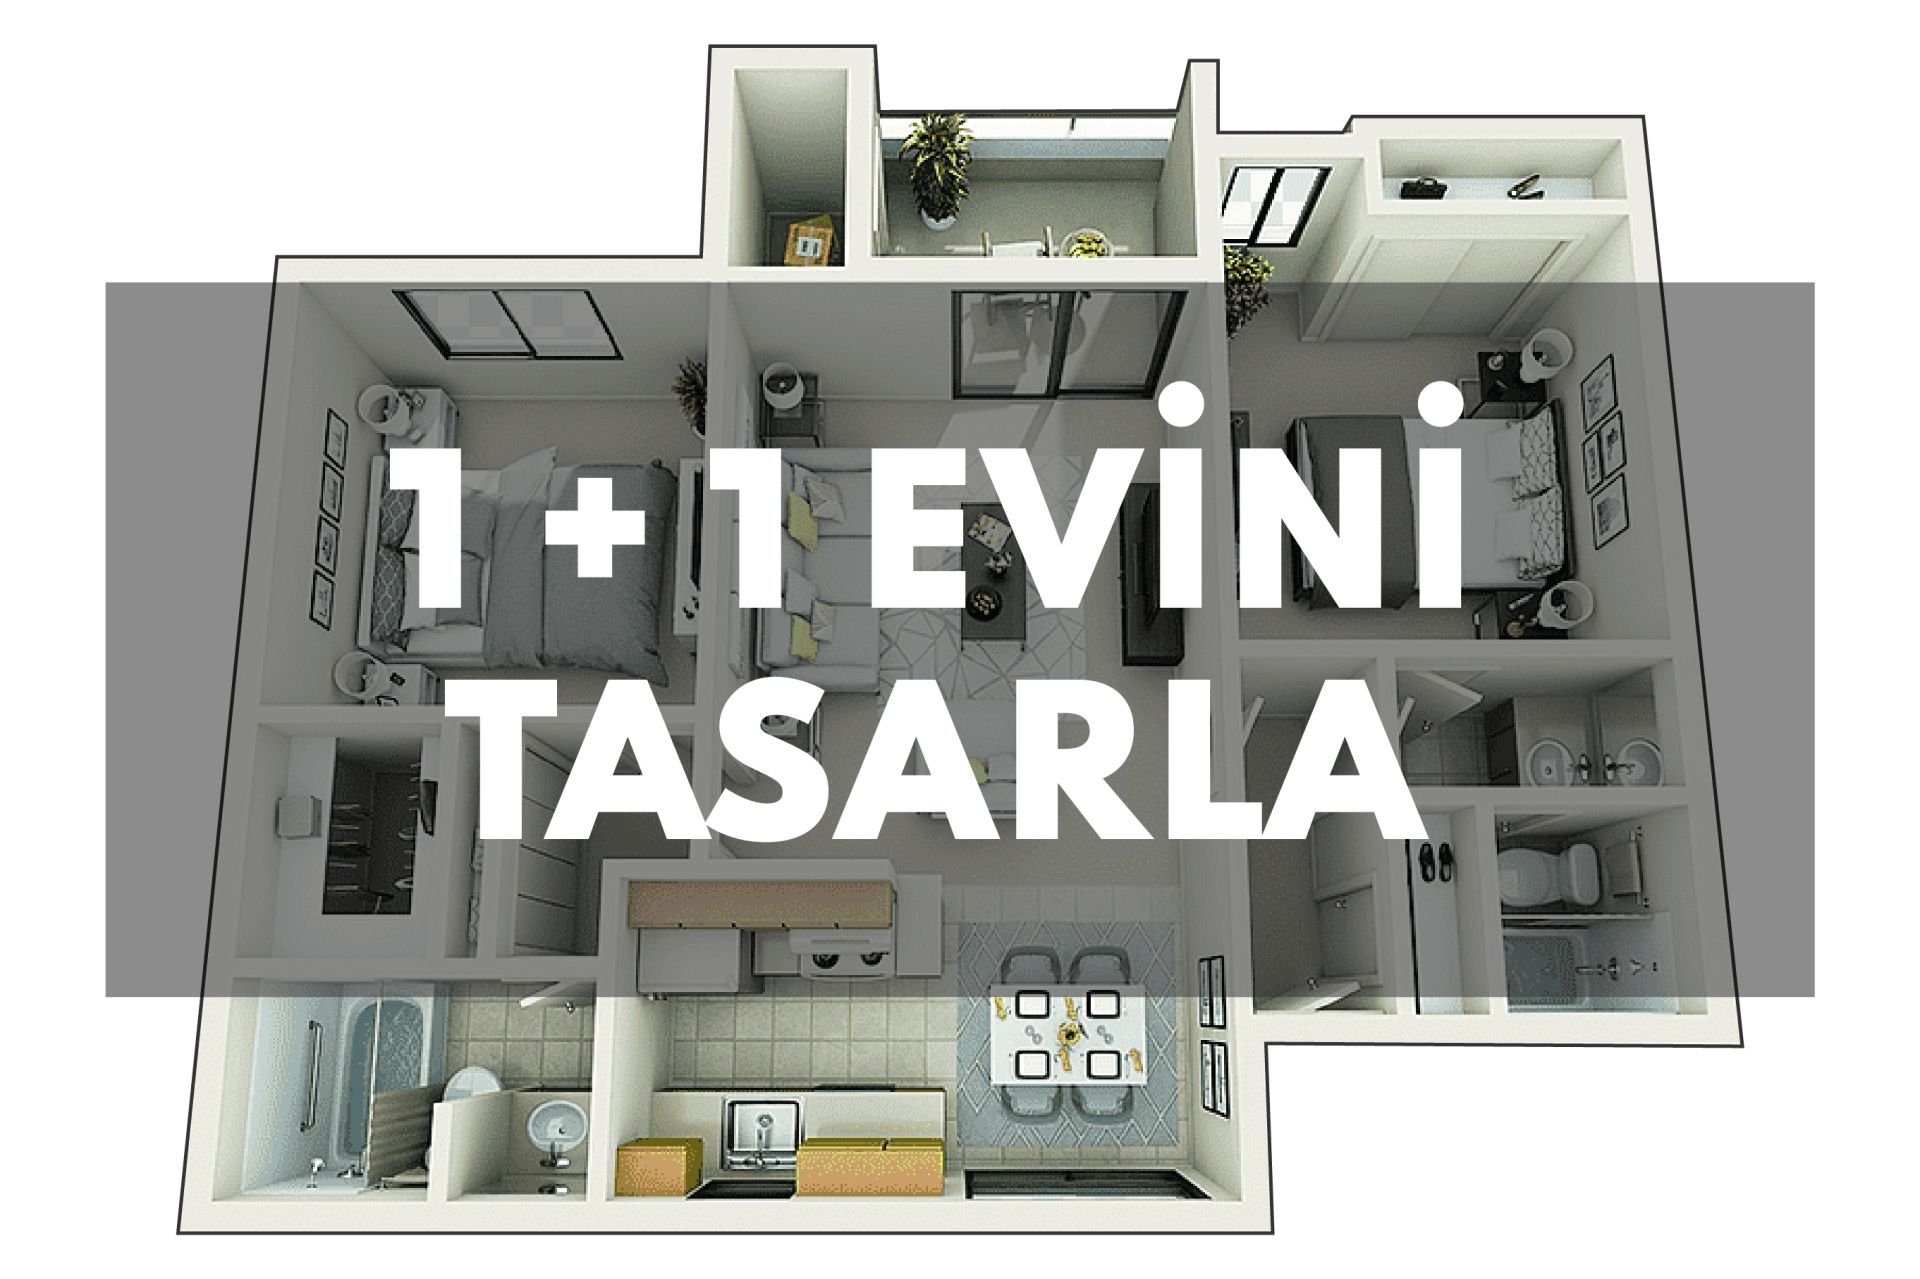 1 + 1 Evini Tasarla